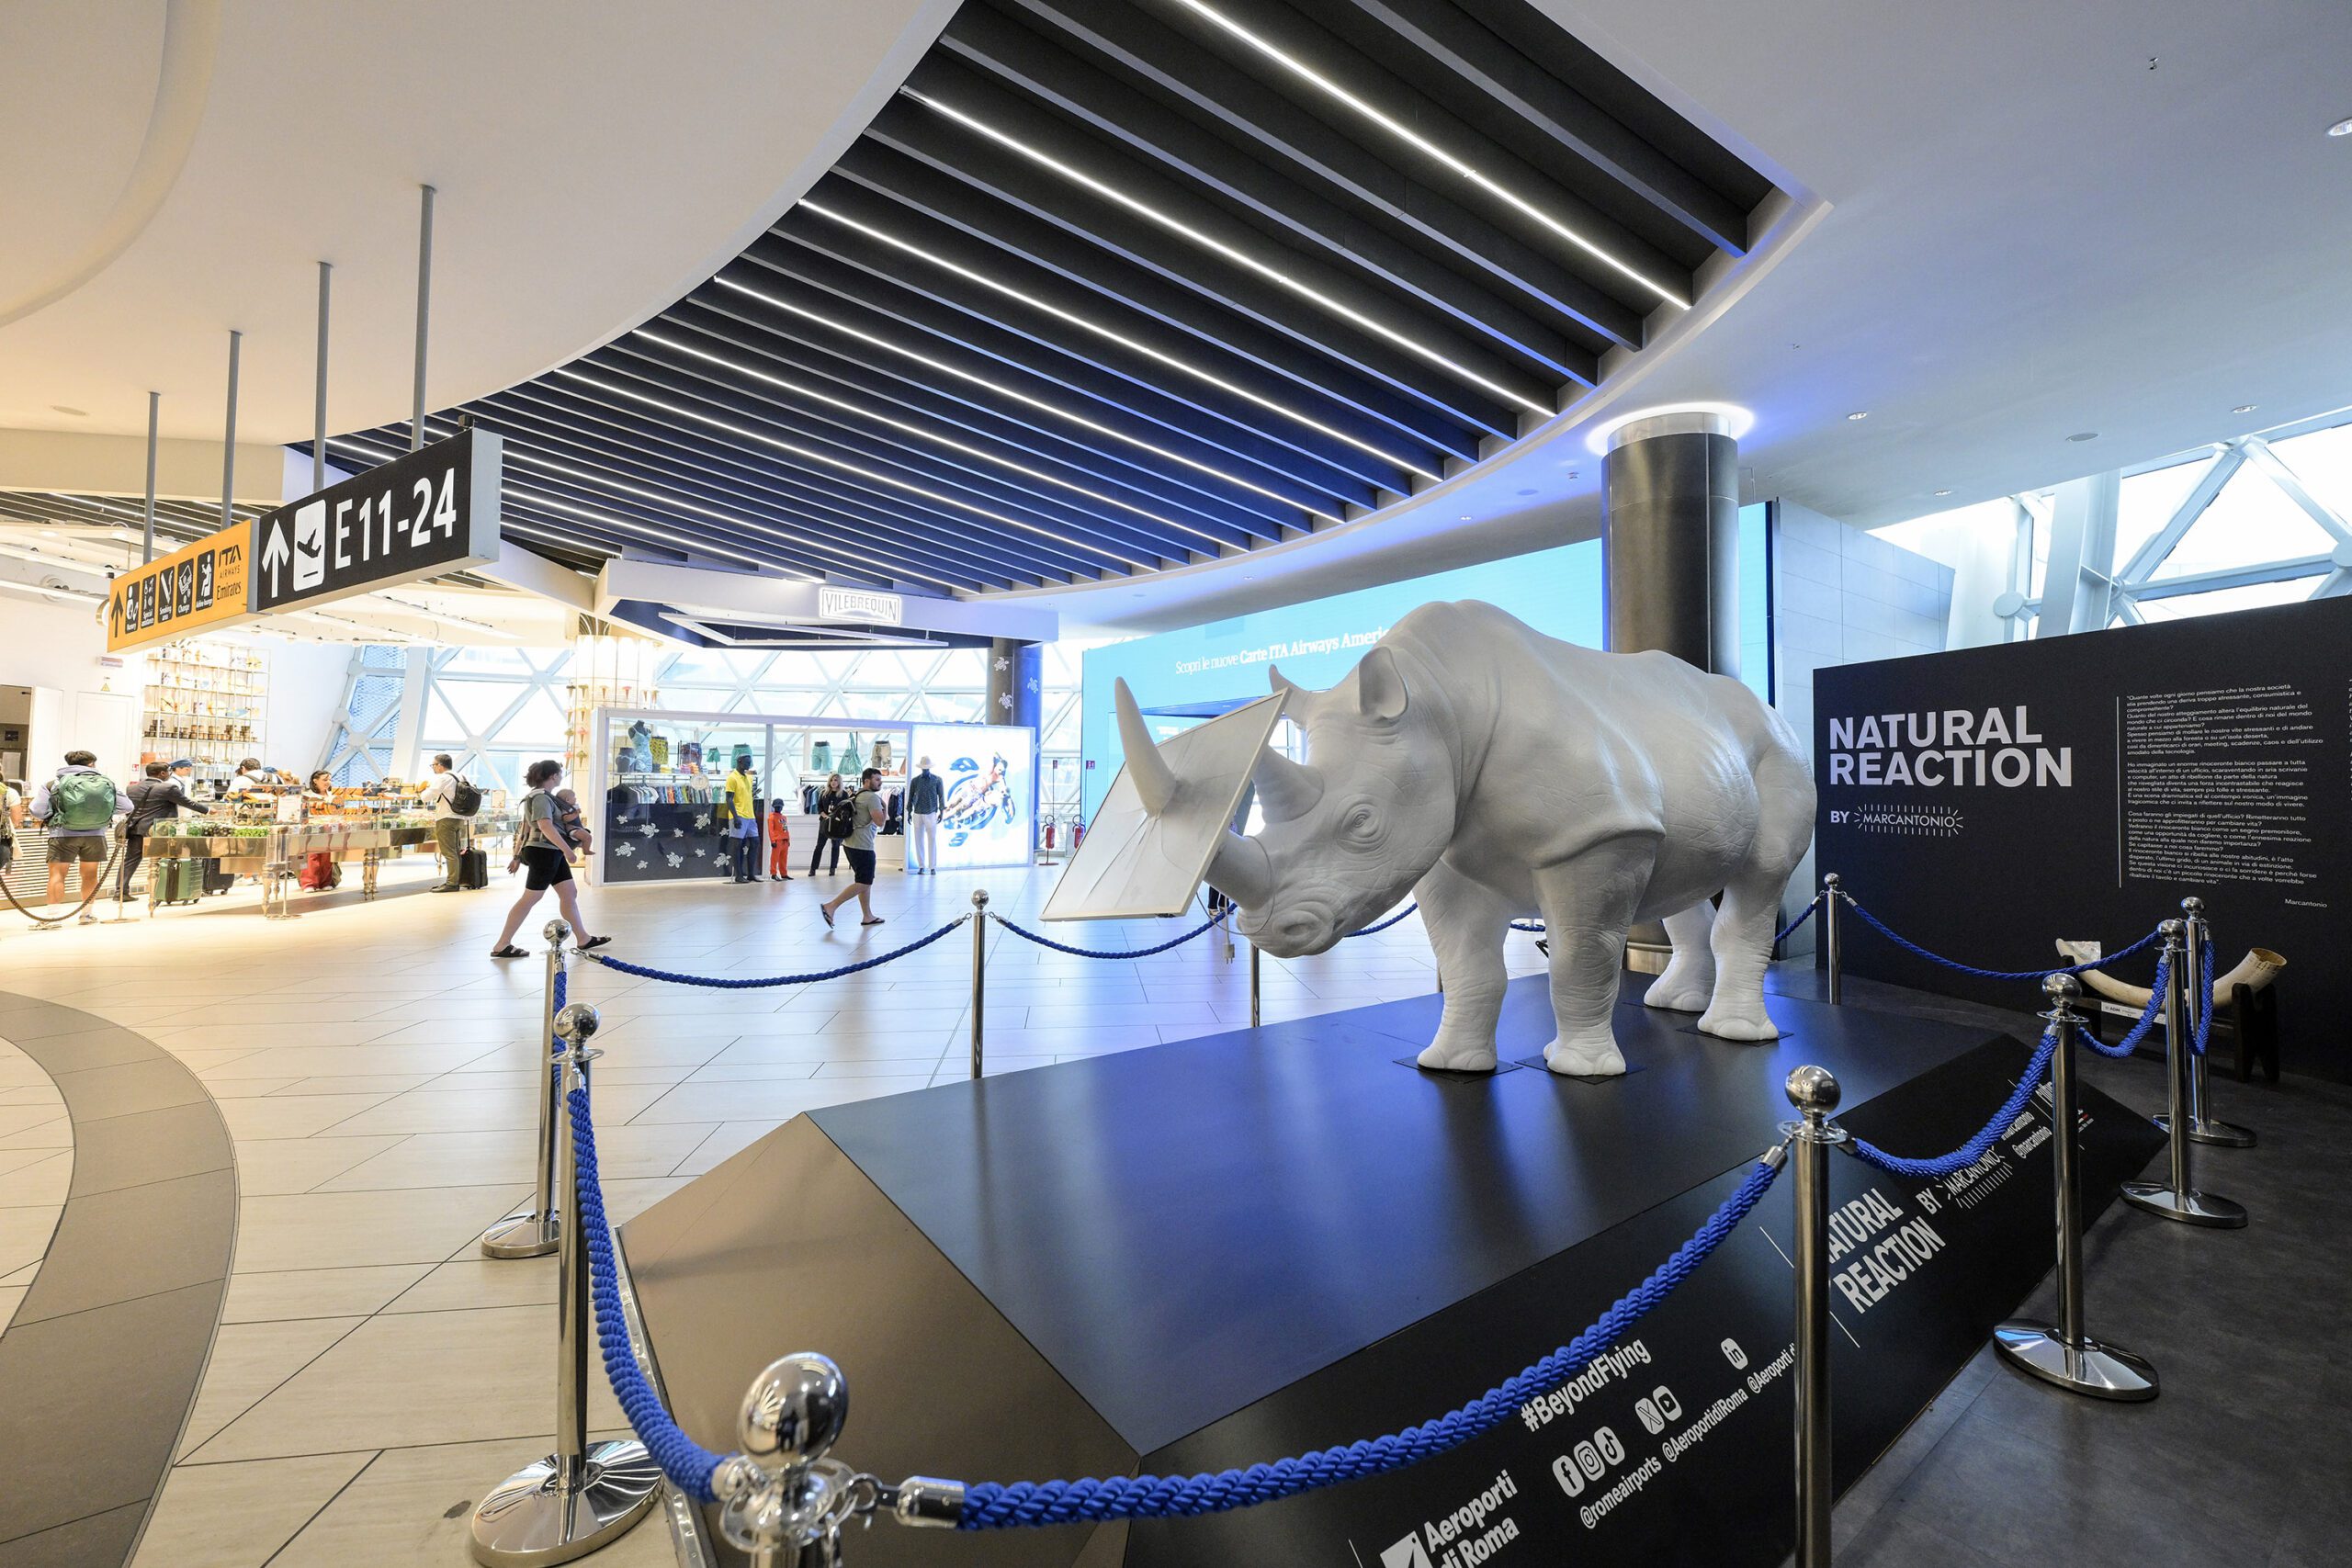 A Fiumicino è spuntato un rinoceronte dentro l’aeroporto: “Natural Reaction” By Marcantonio